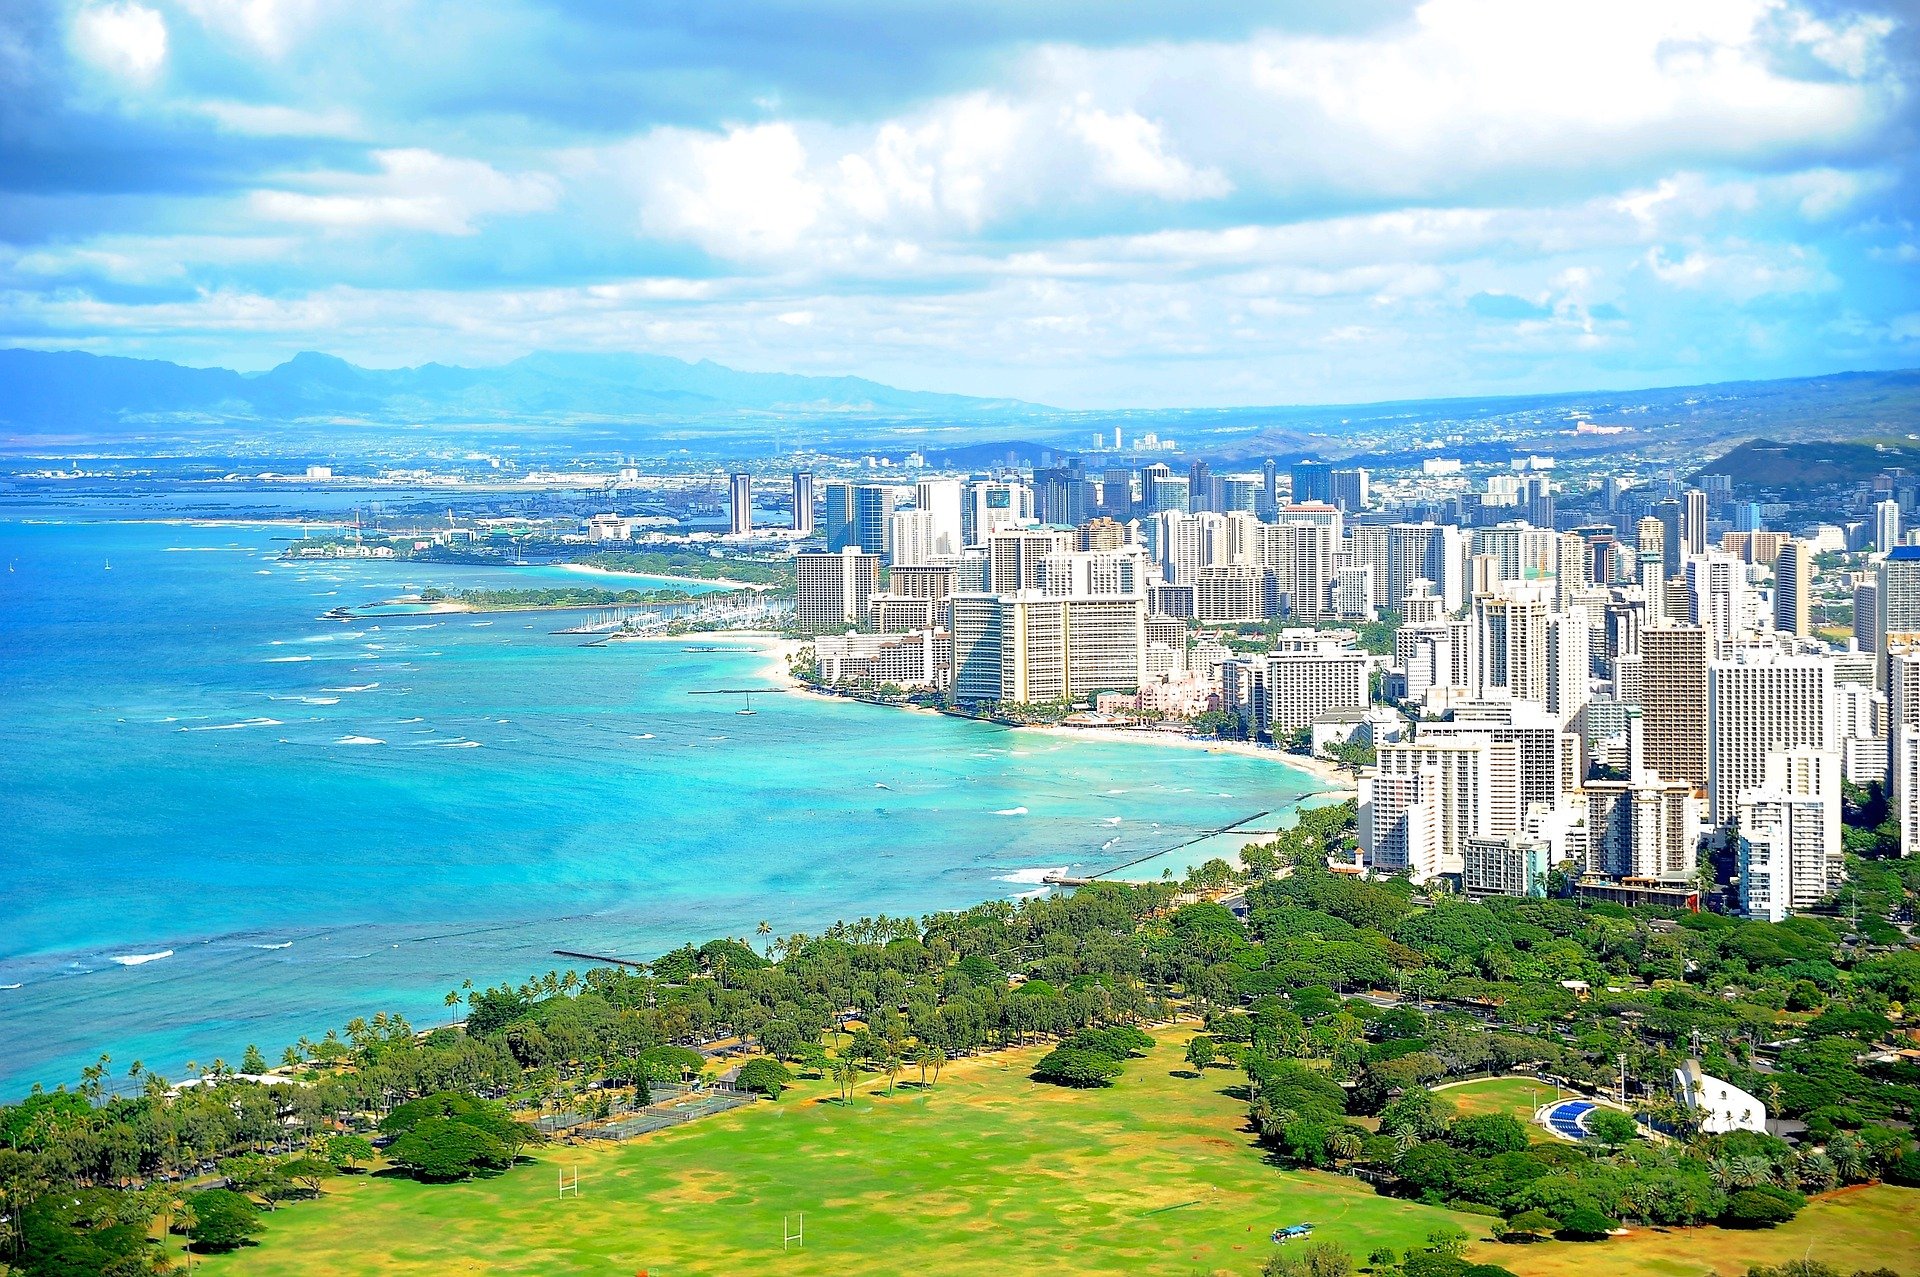 For Fantastic Waikiki Holidays Visit This Great Waikiki Site